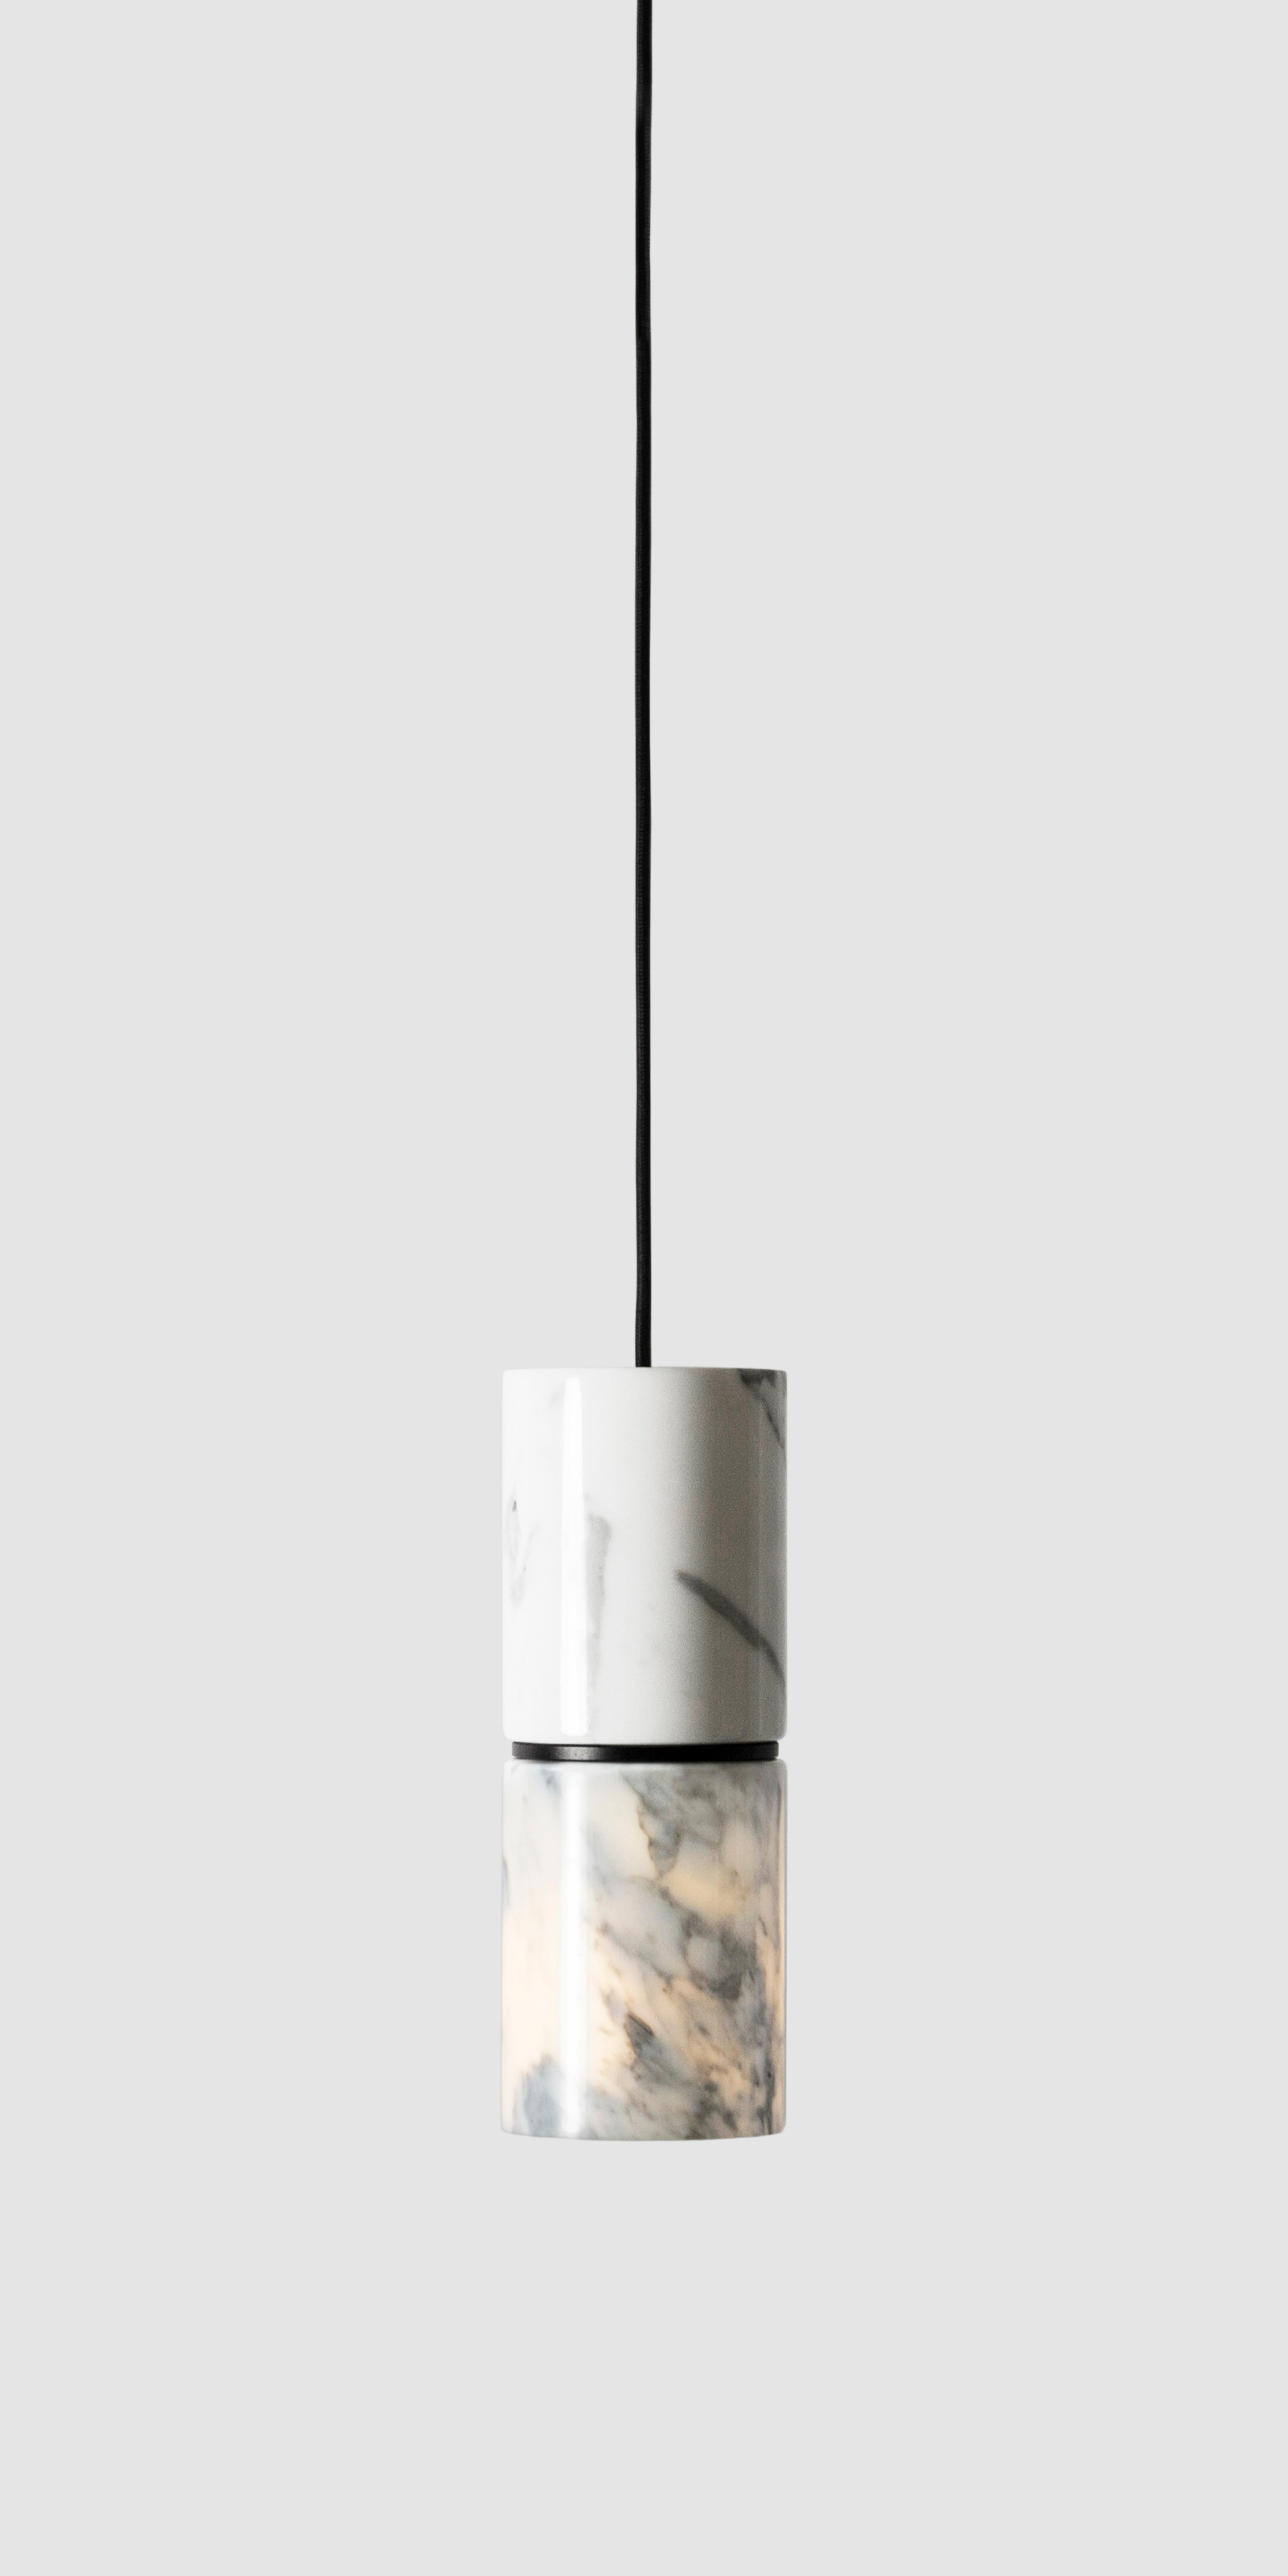 Lampe suspendue 'RI' de Buzao x Bentu Design. 
Des versions en pierre de lave noire et en marbre blanc sont disponibles.

(Vendu individuellement)

Mesures : 26.5 cm de haut, 10 cm de diamètre
Fil : 2 mètres noir (réglable)

Finition en laiton (or)